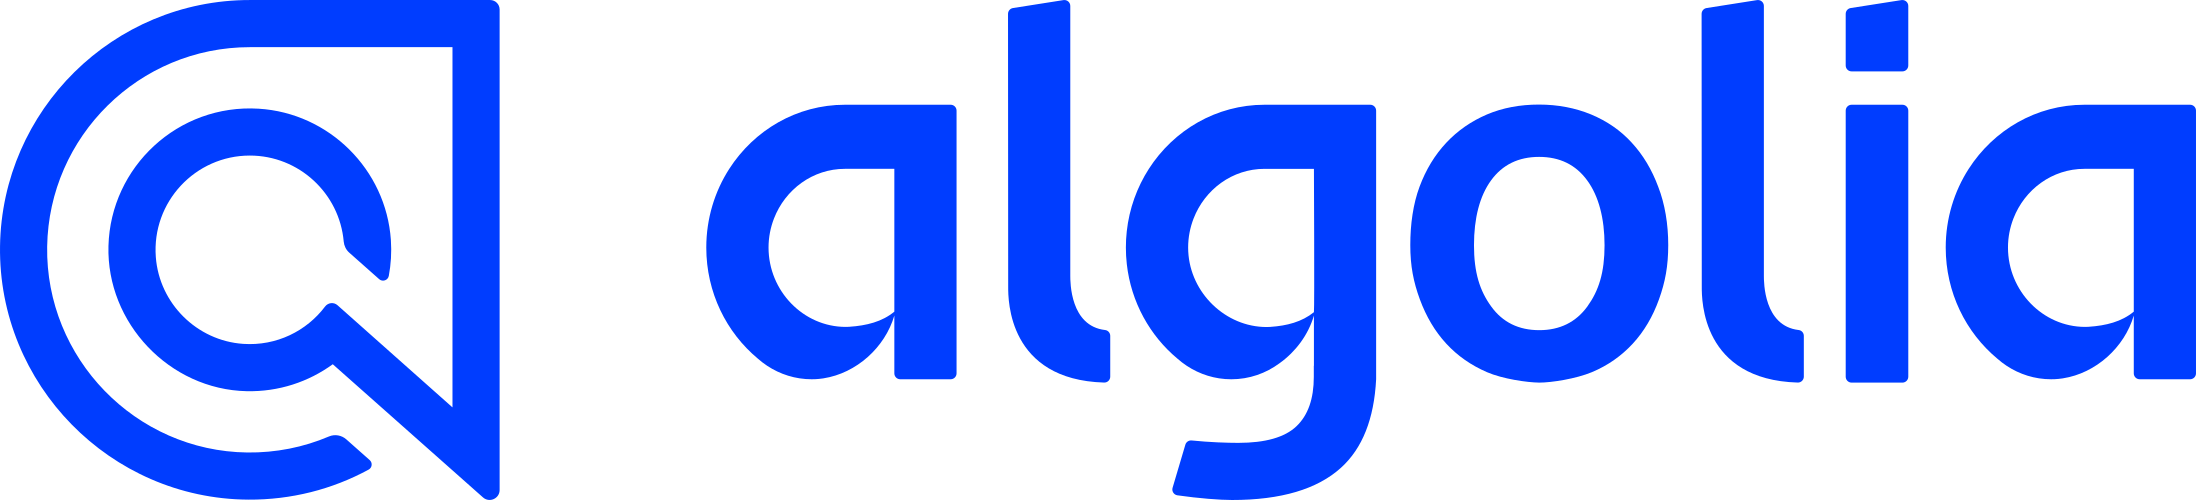 Algolia Logo